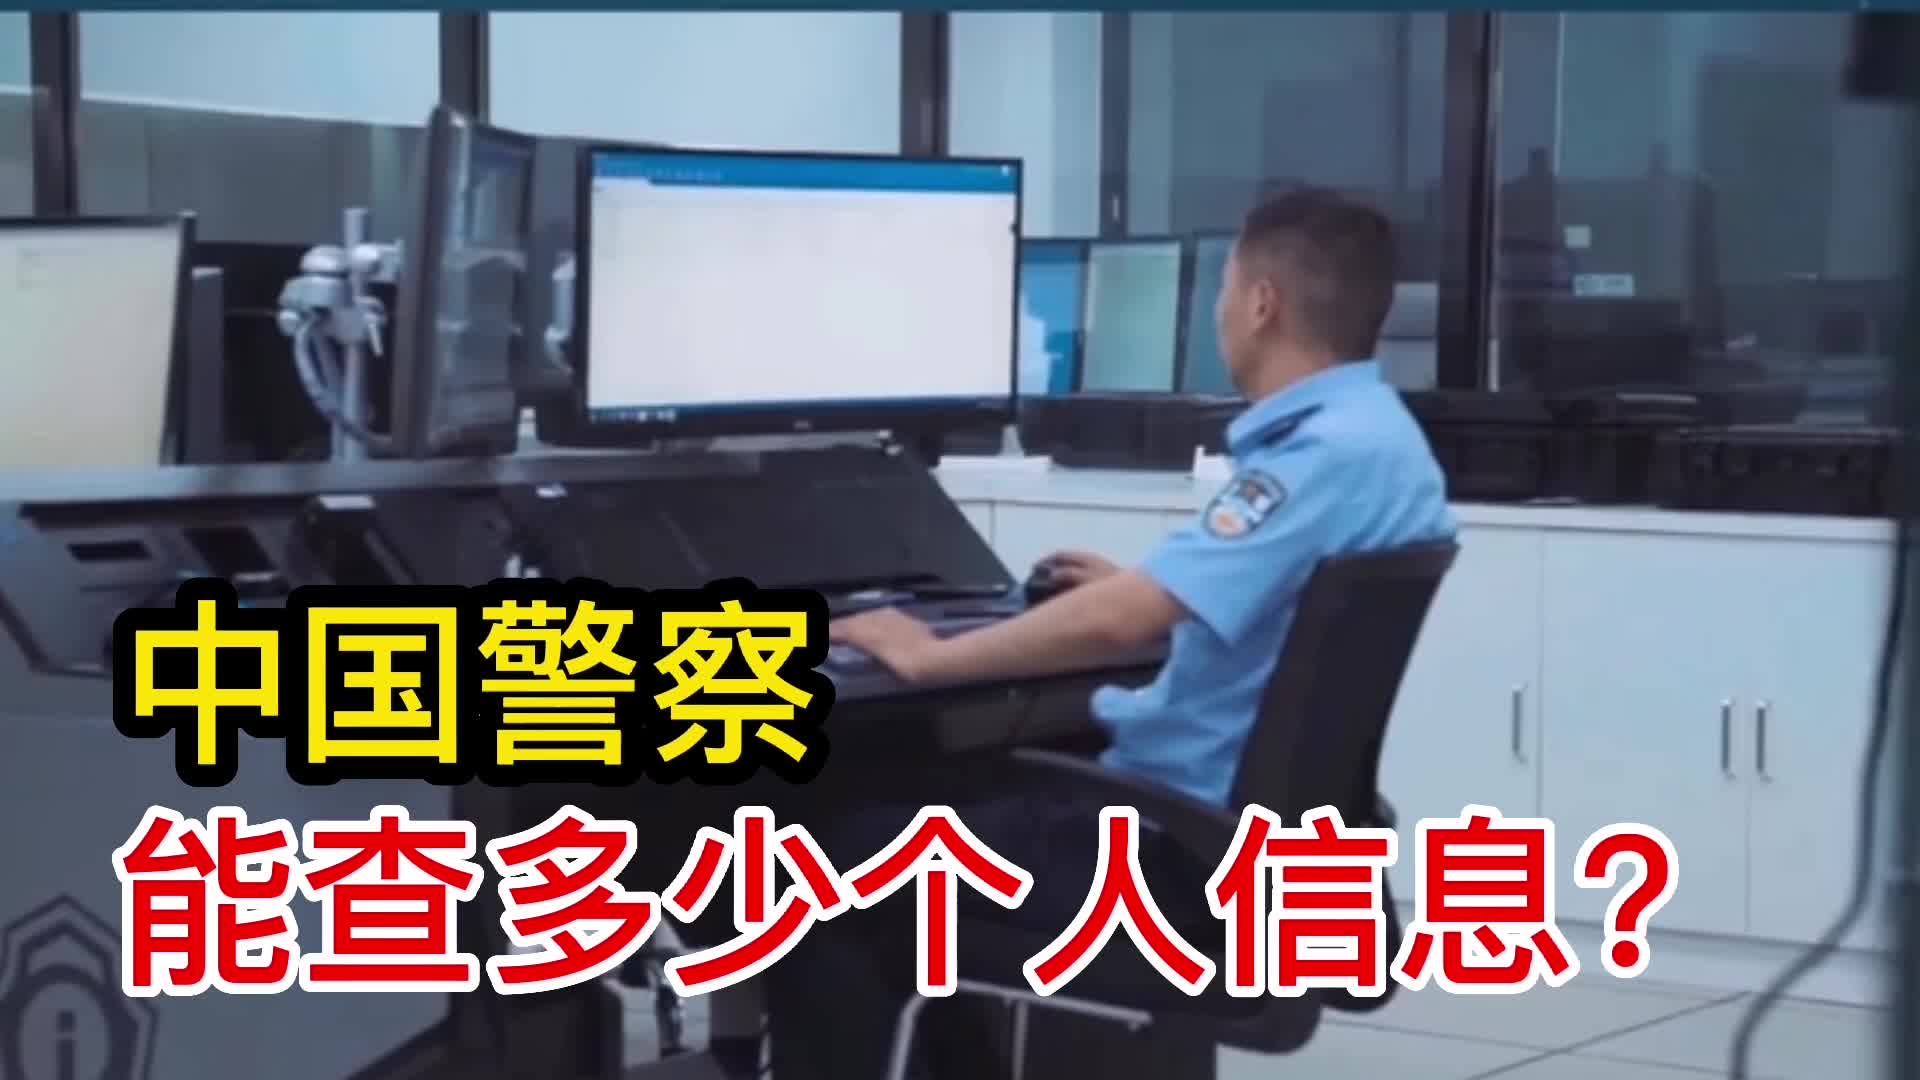 中国警察，能查多少个人信息？